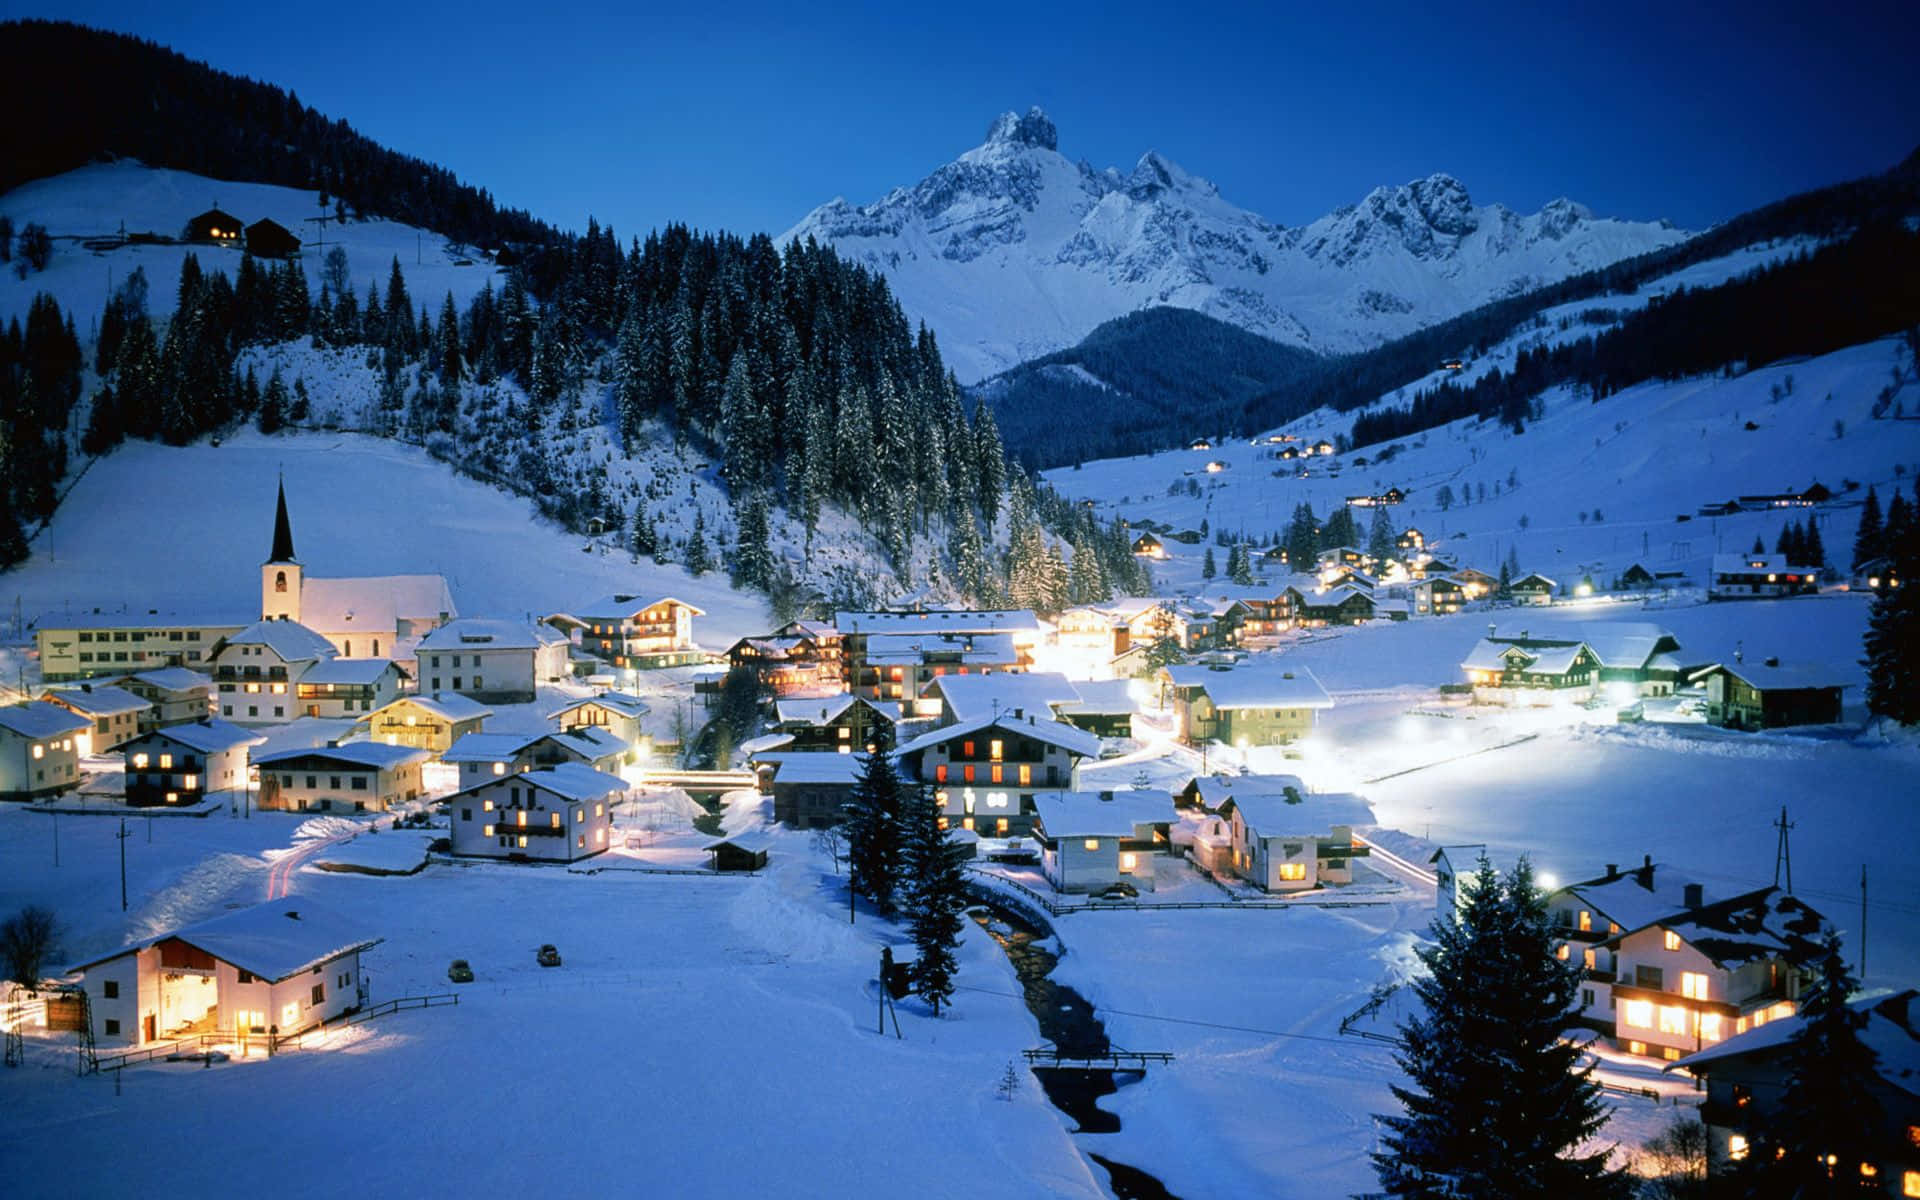 Snowy Village in Winter Wonderland Wallpaper